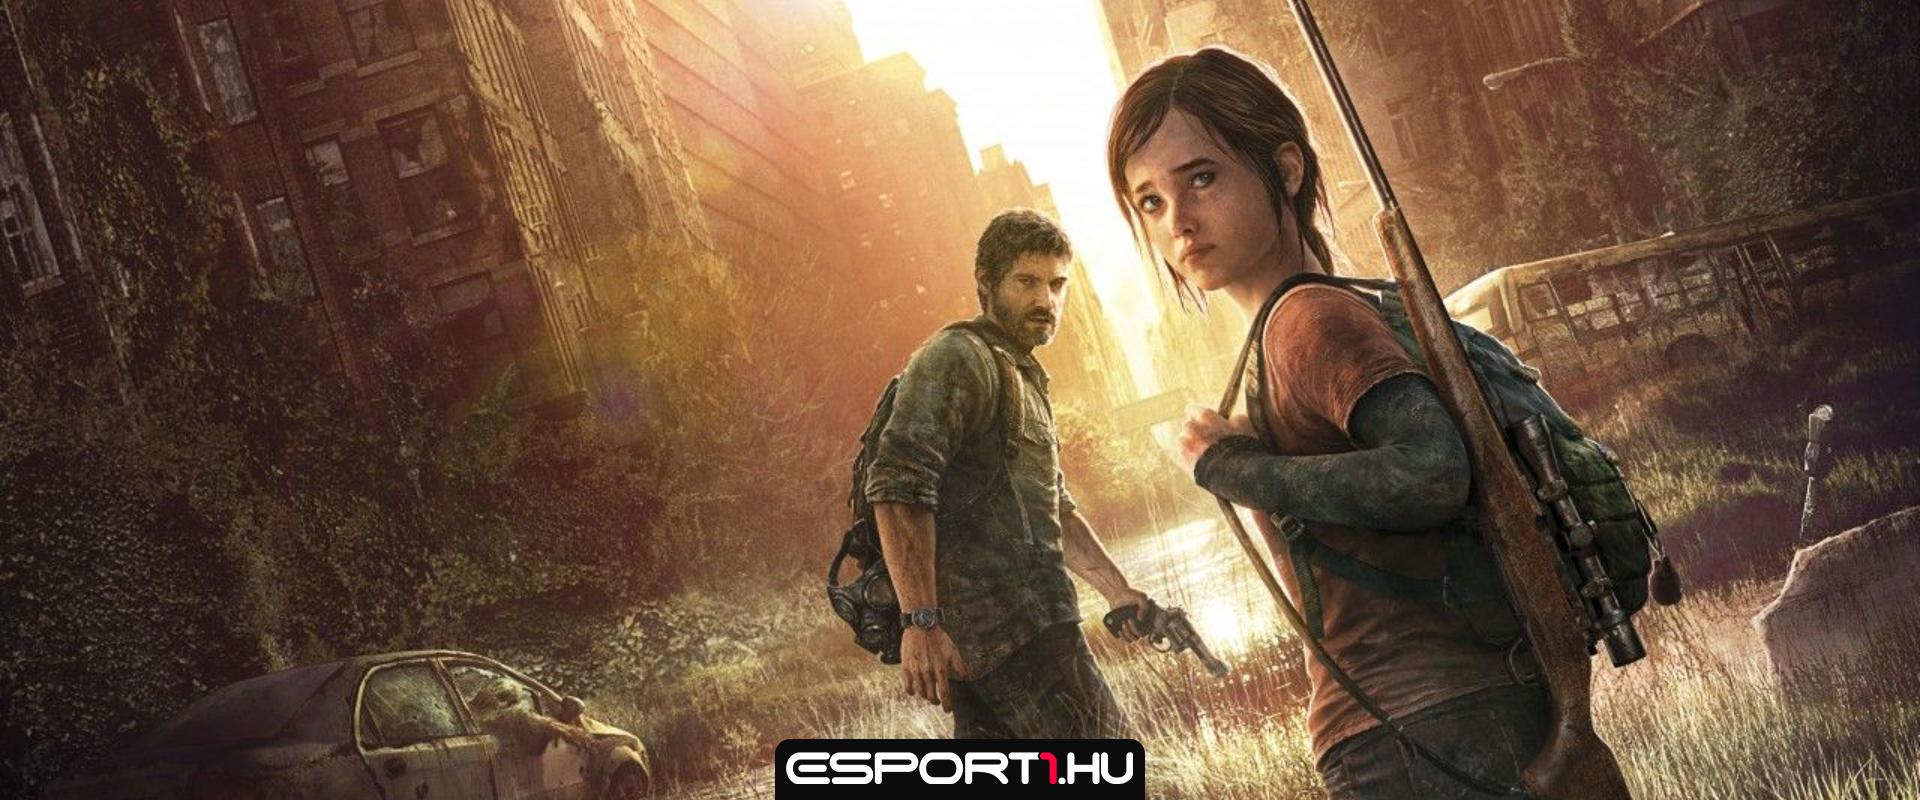 Új kiszivárgott felvételeken láthatjuk a The Last of Us sorozatot